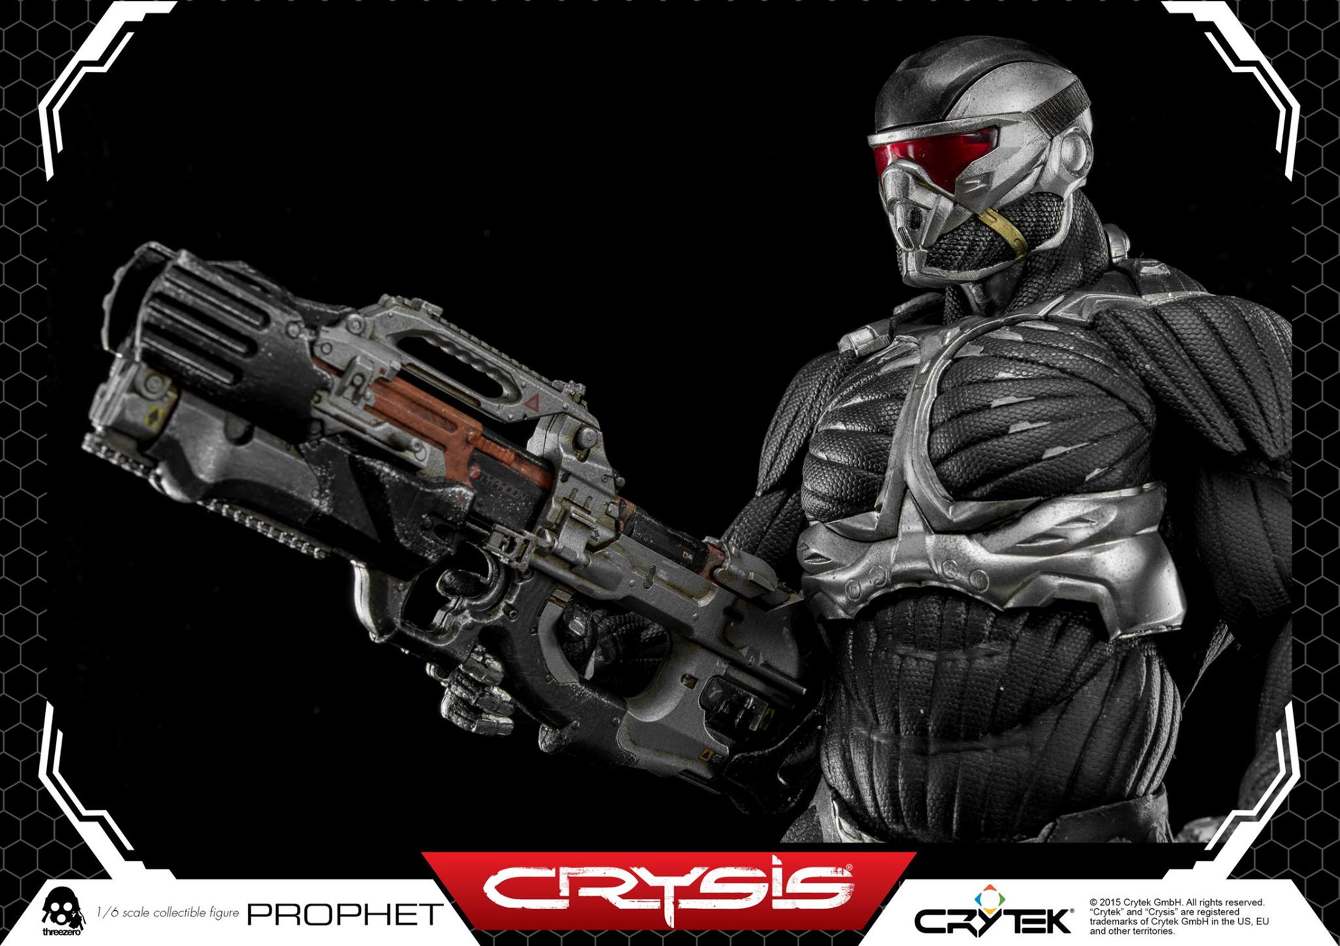 ThreeZero-Crysis-video-game-Prophet-CRY4_1340_c.jpg